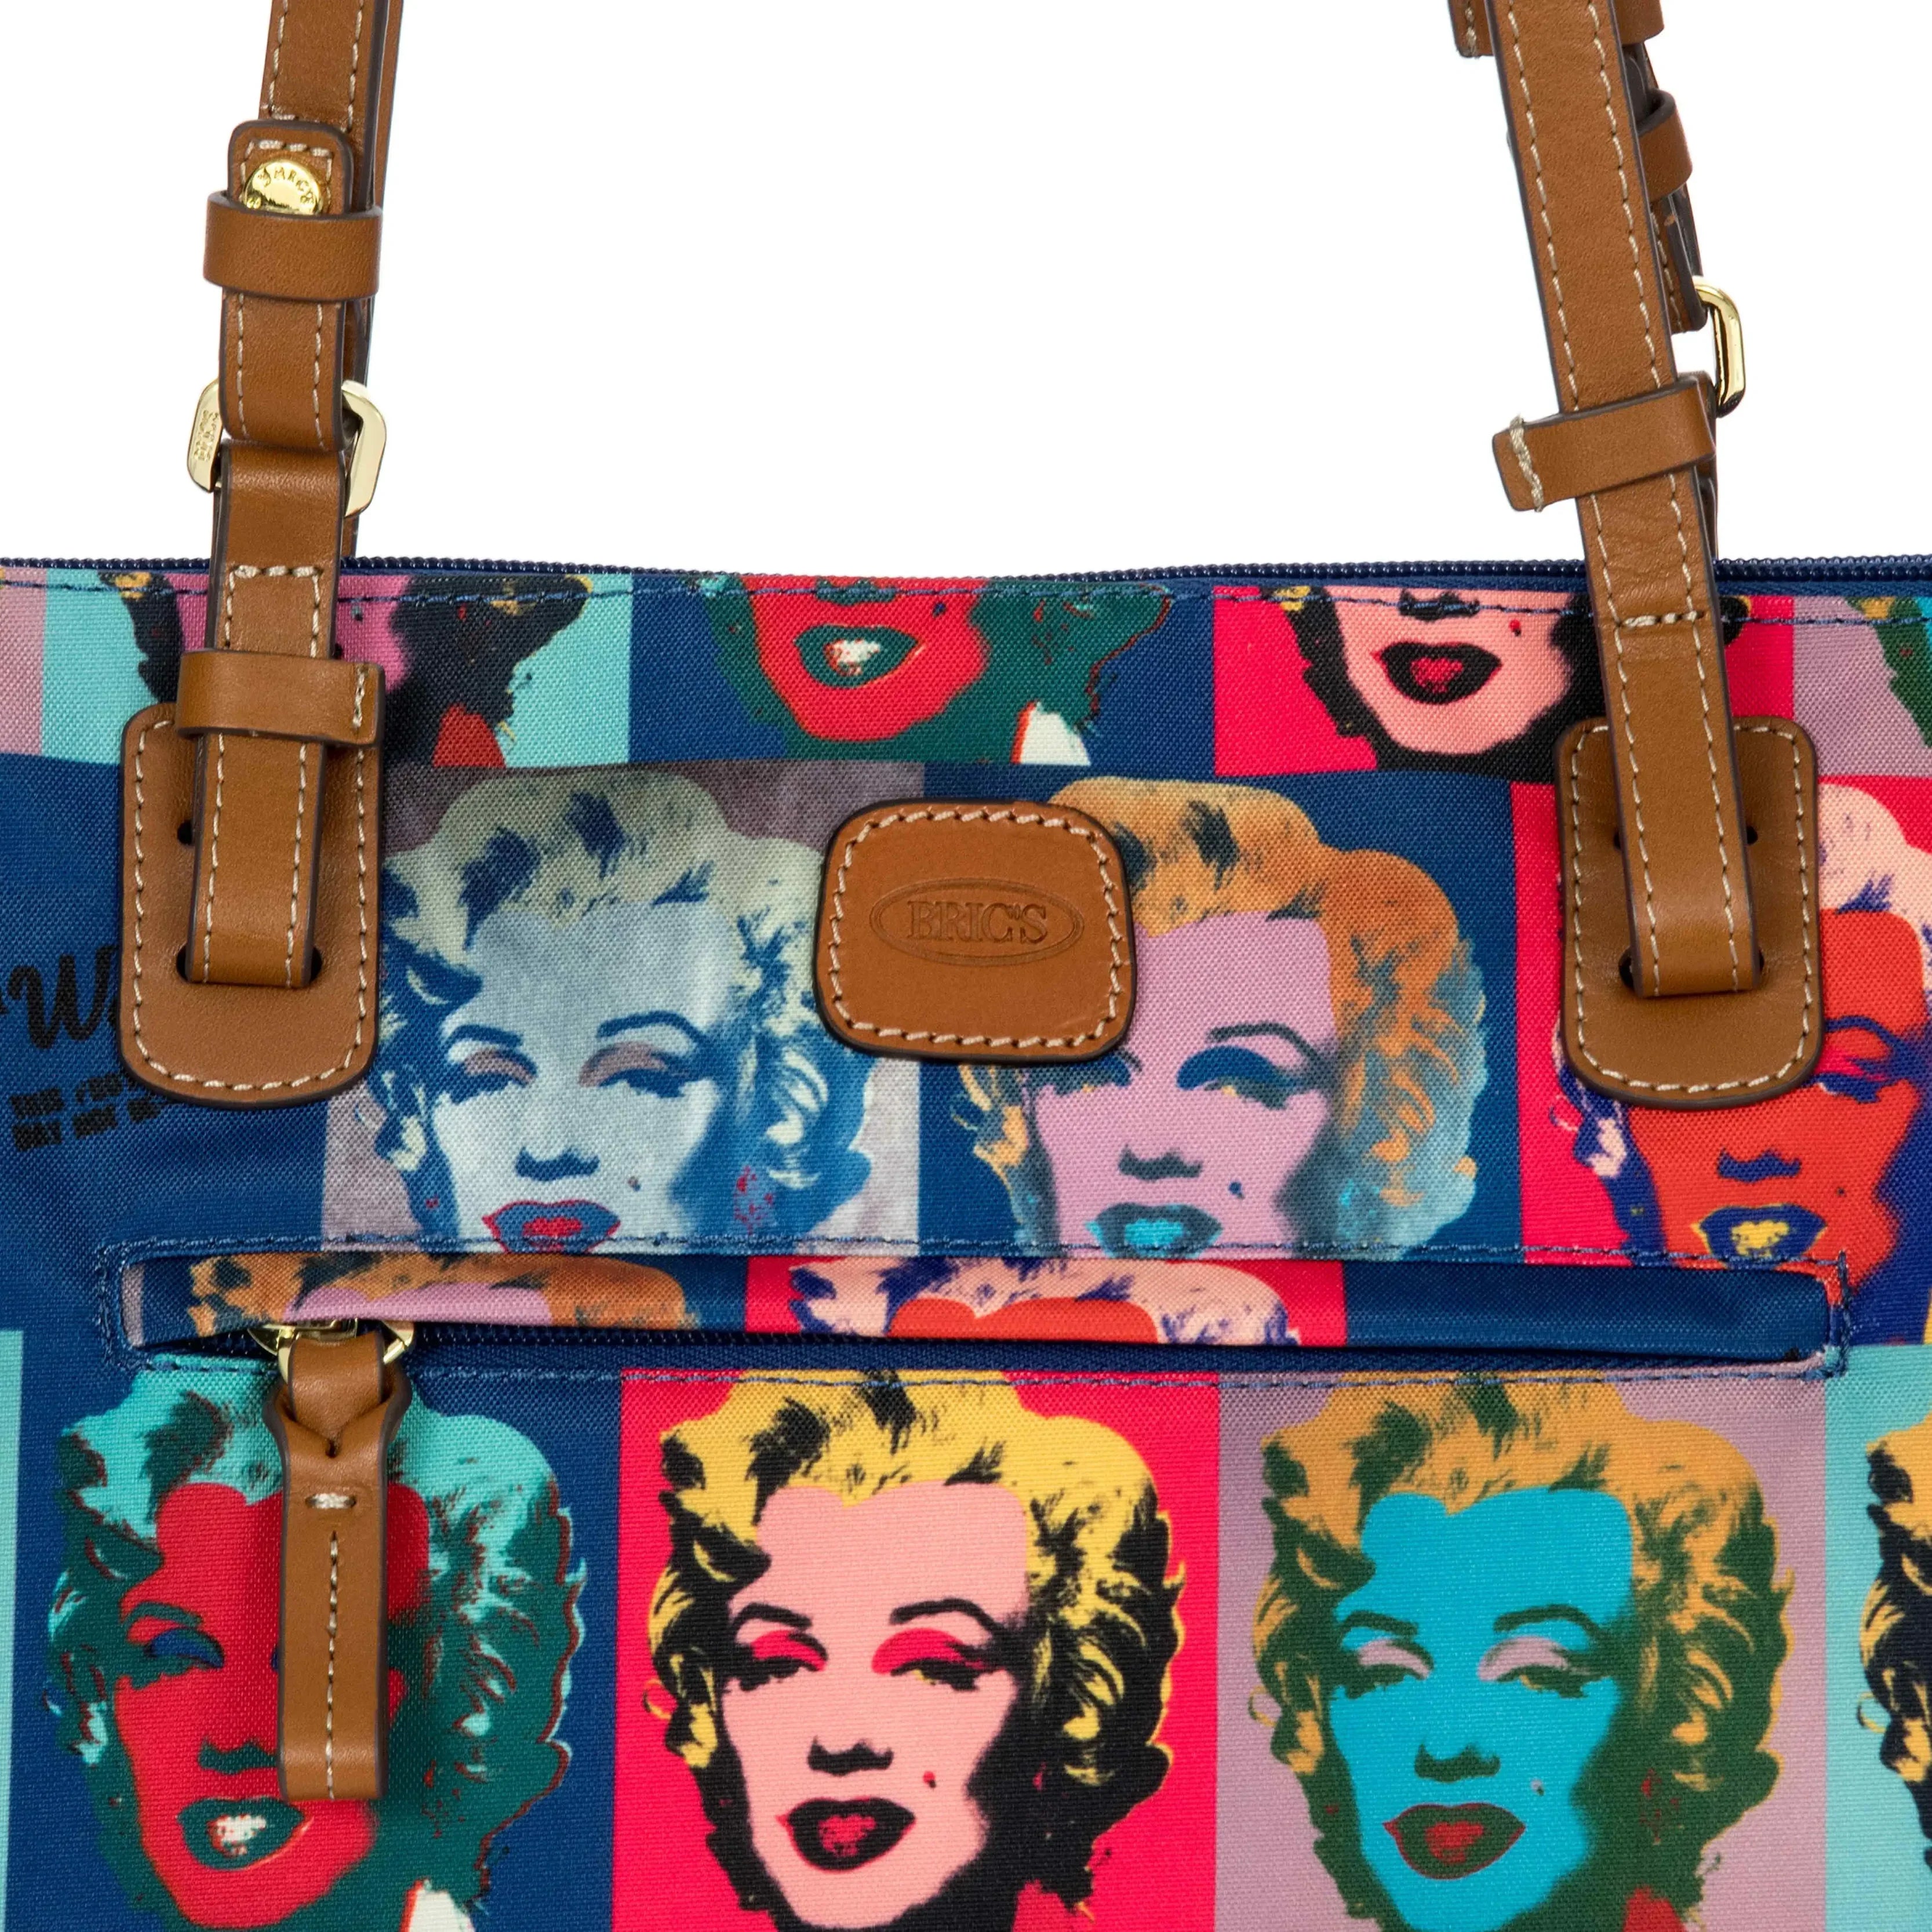 Sac Shopping Brics Andy Warhol 45 cm - Marilyn